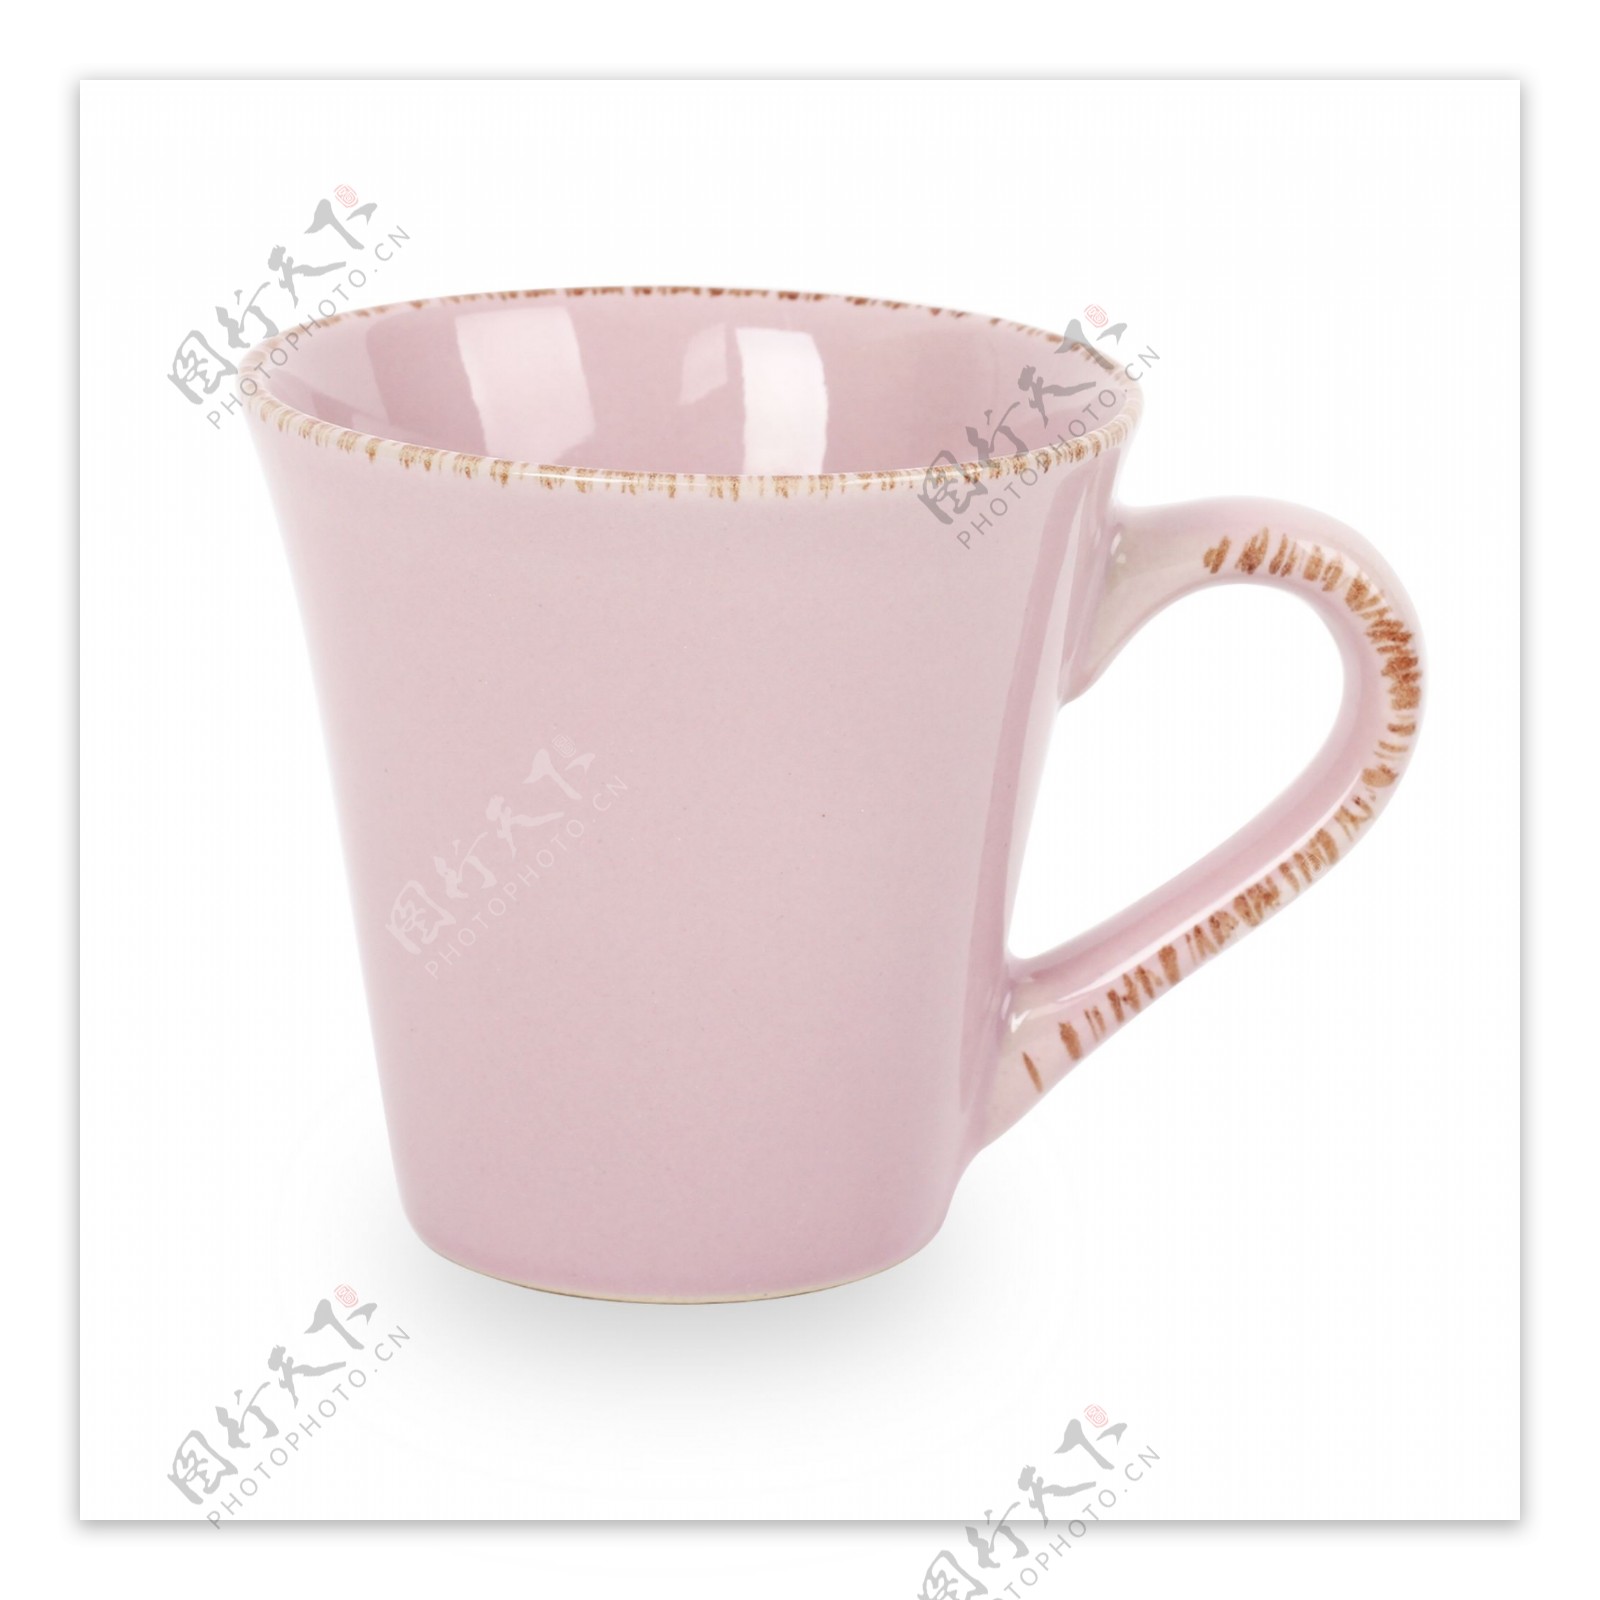 粉色陶瓷杯分层图片